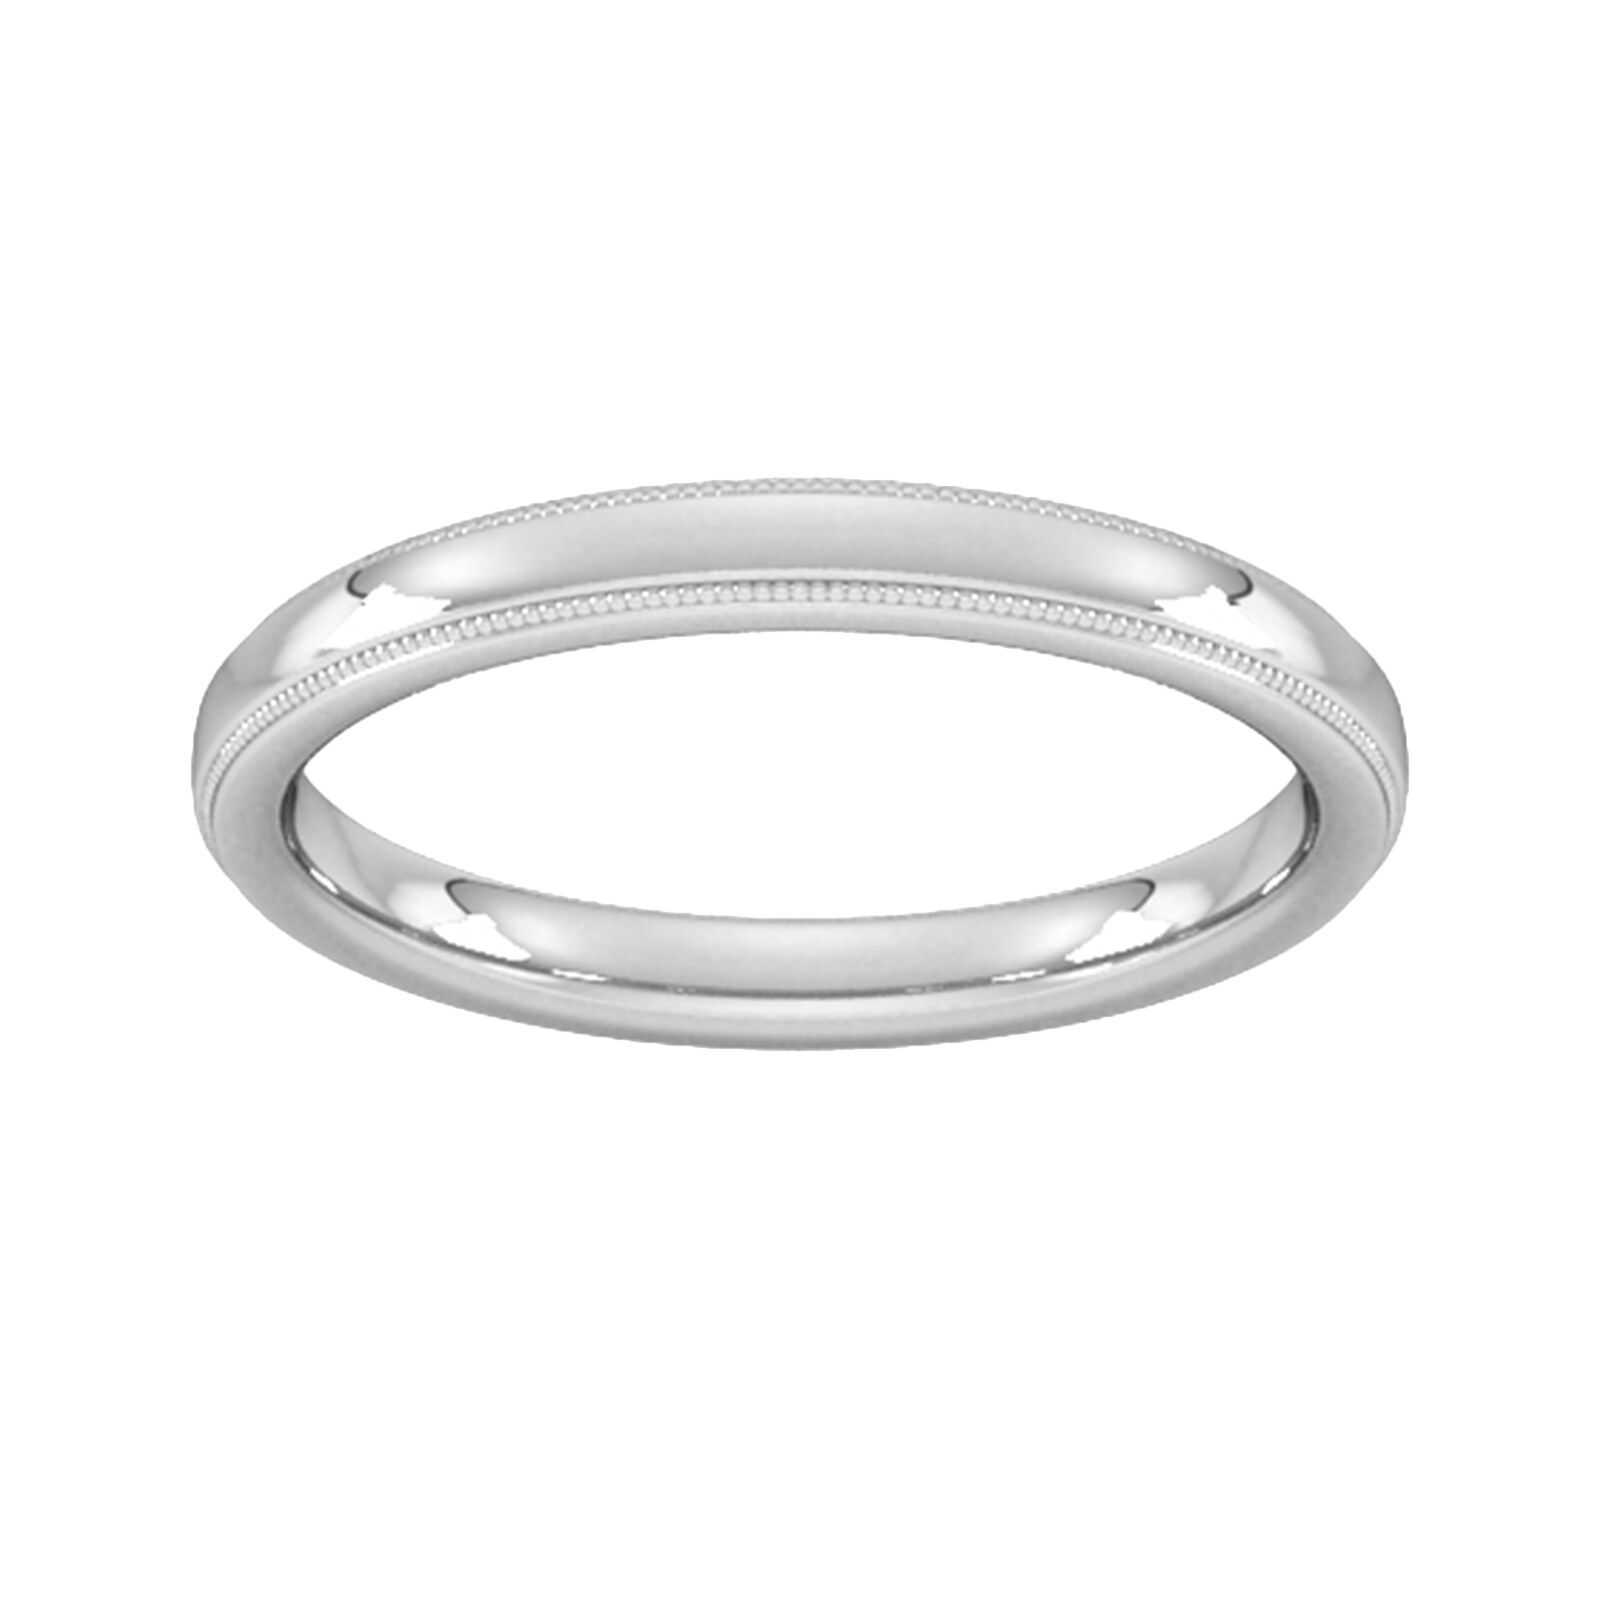 2.5mm Slight Court Standard Milgrain Edge Wedding Ring In 9 Carat White Gold - Ring Size M